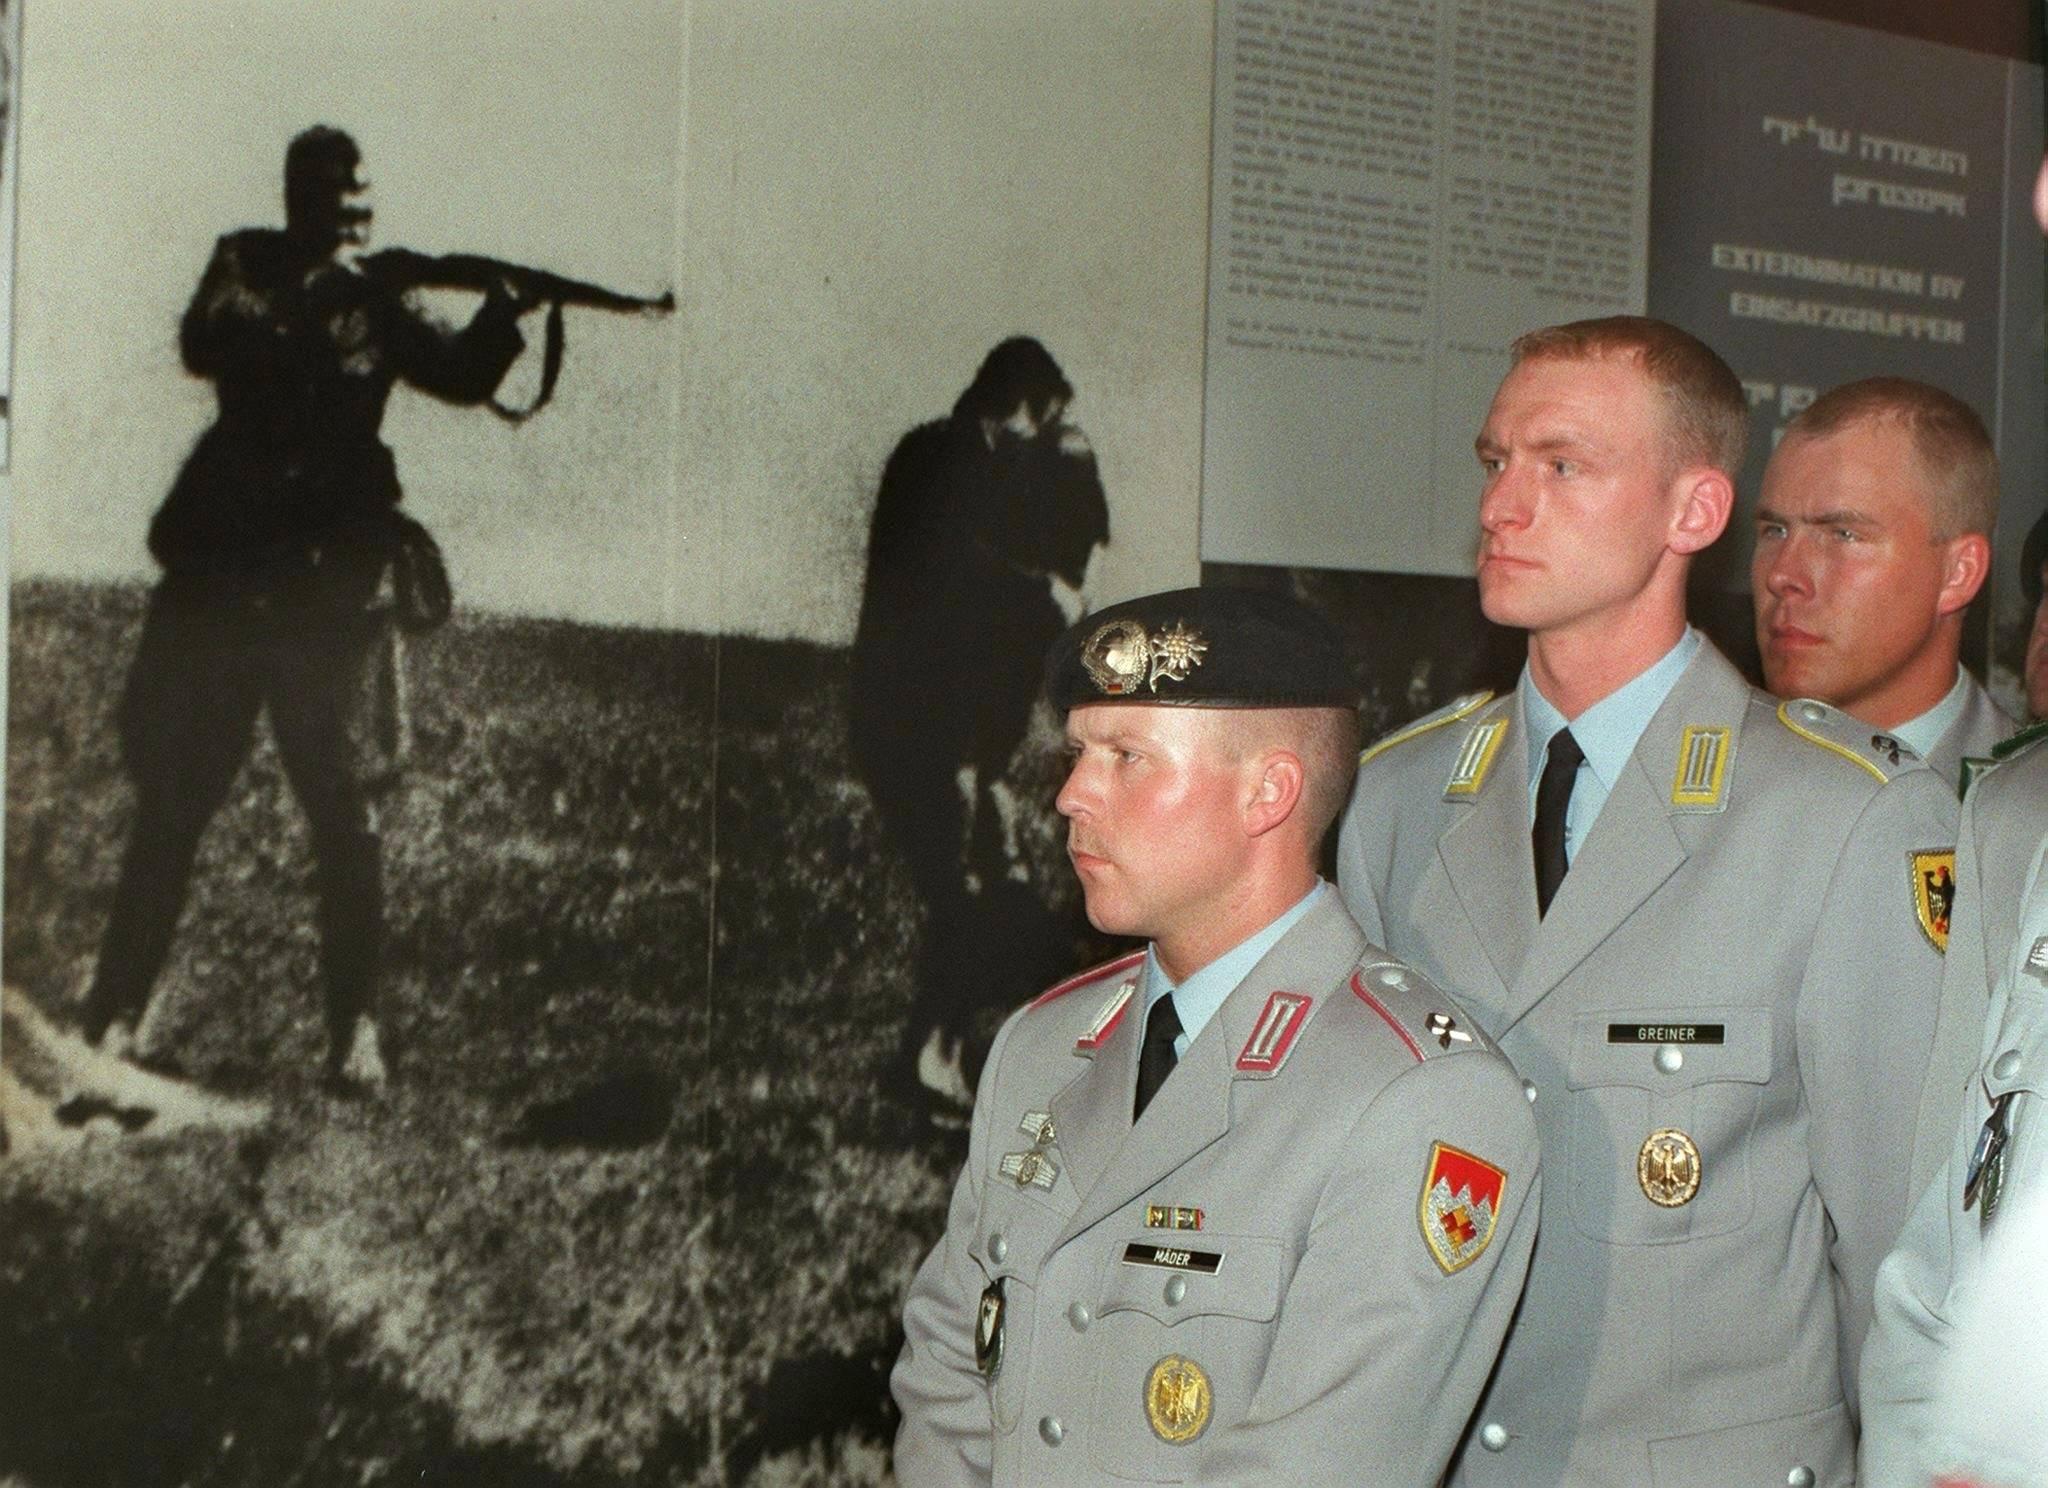 trzech oficerów Bundeswehry stoi na tle zdjecia przedstawiającego żołnoerza Wehrmachtu, strzelającego do kobiety z dzieckiem